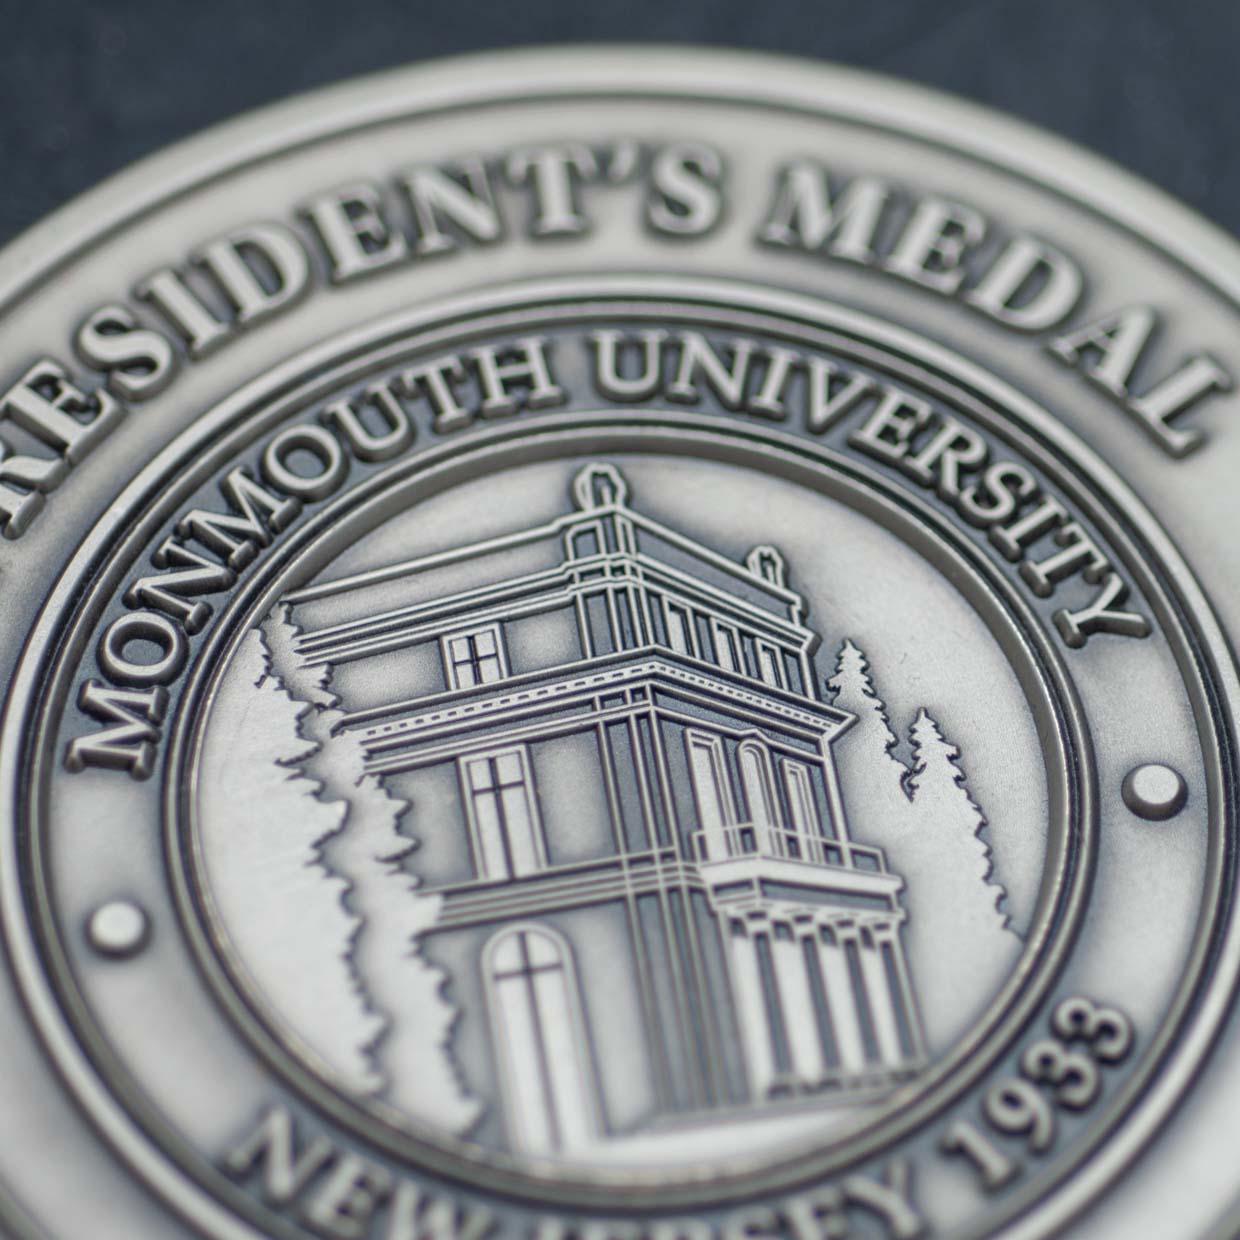 Monmouth University President's Medallion Detail